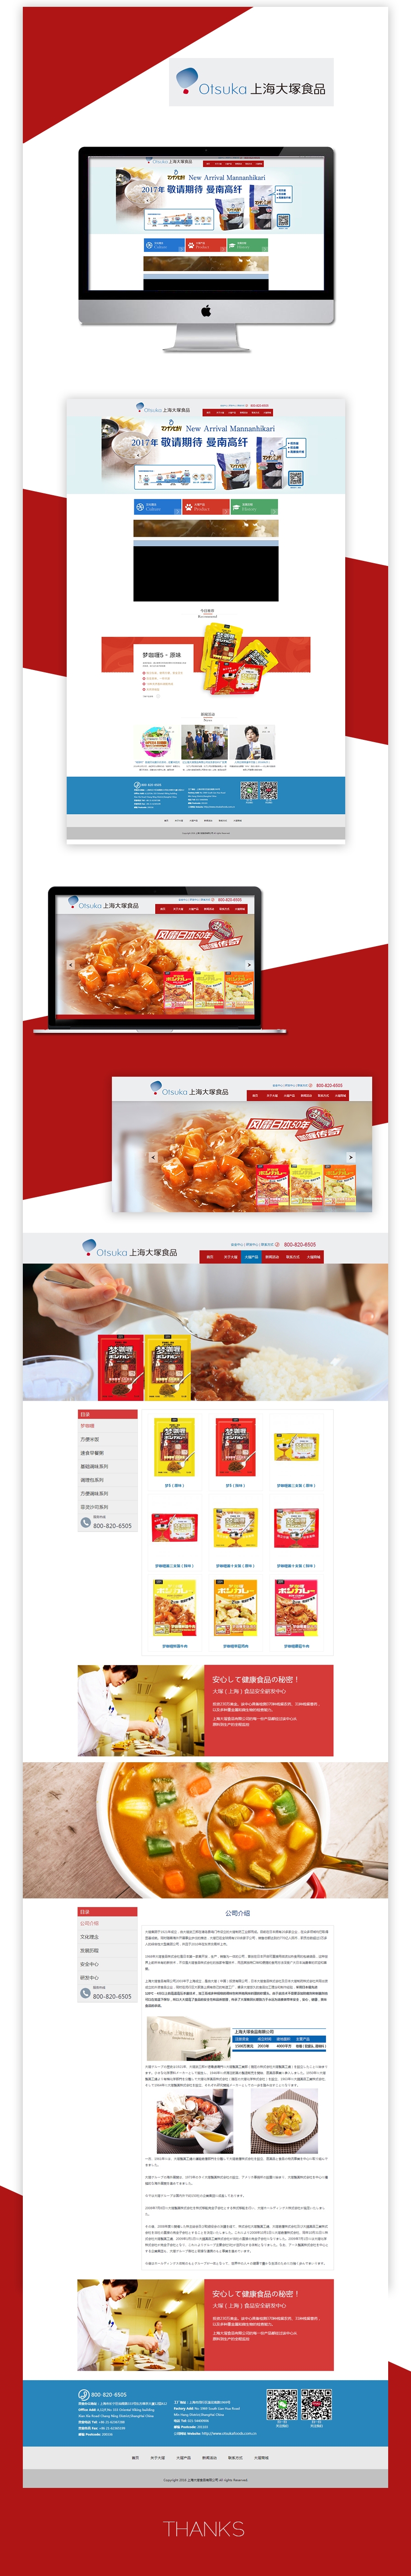 网页设计案例,最新的食品餐饮网站设计作品